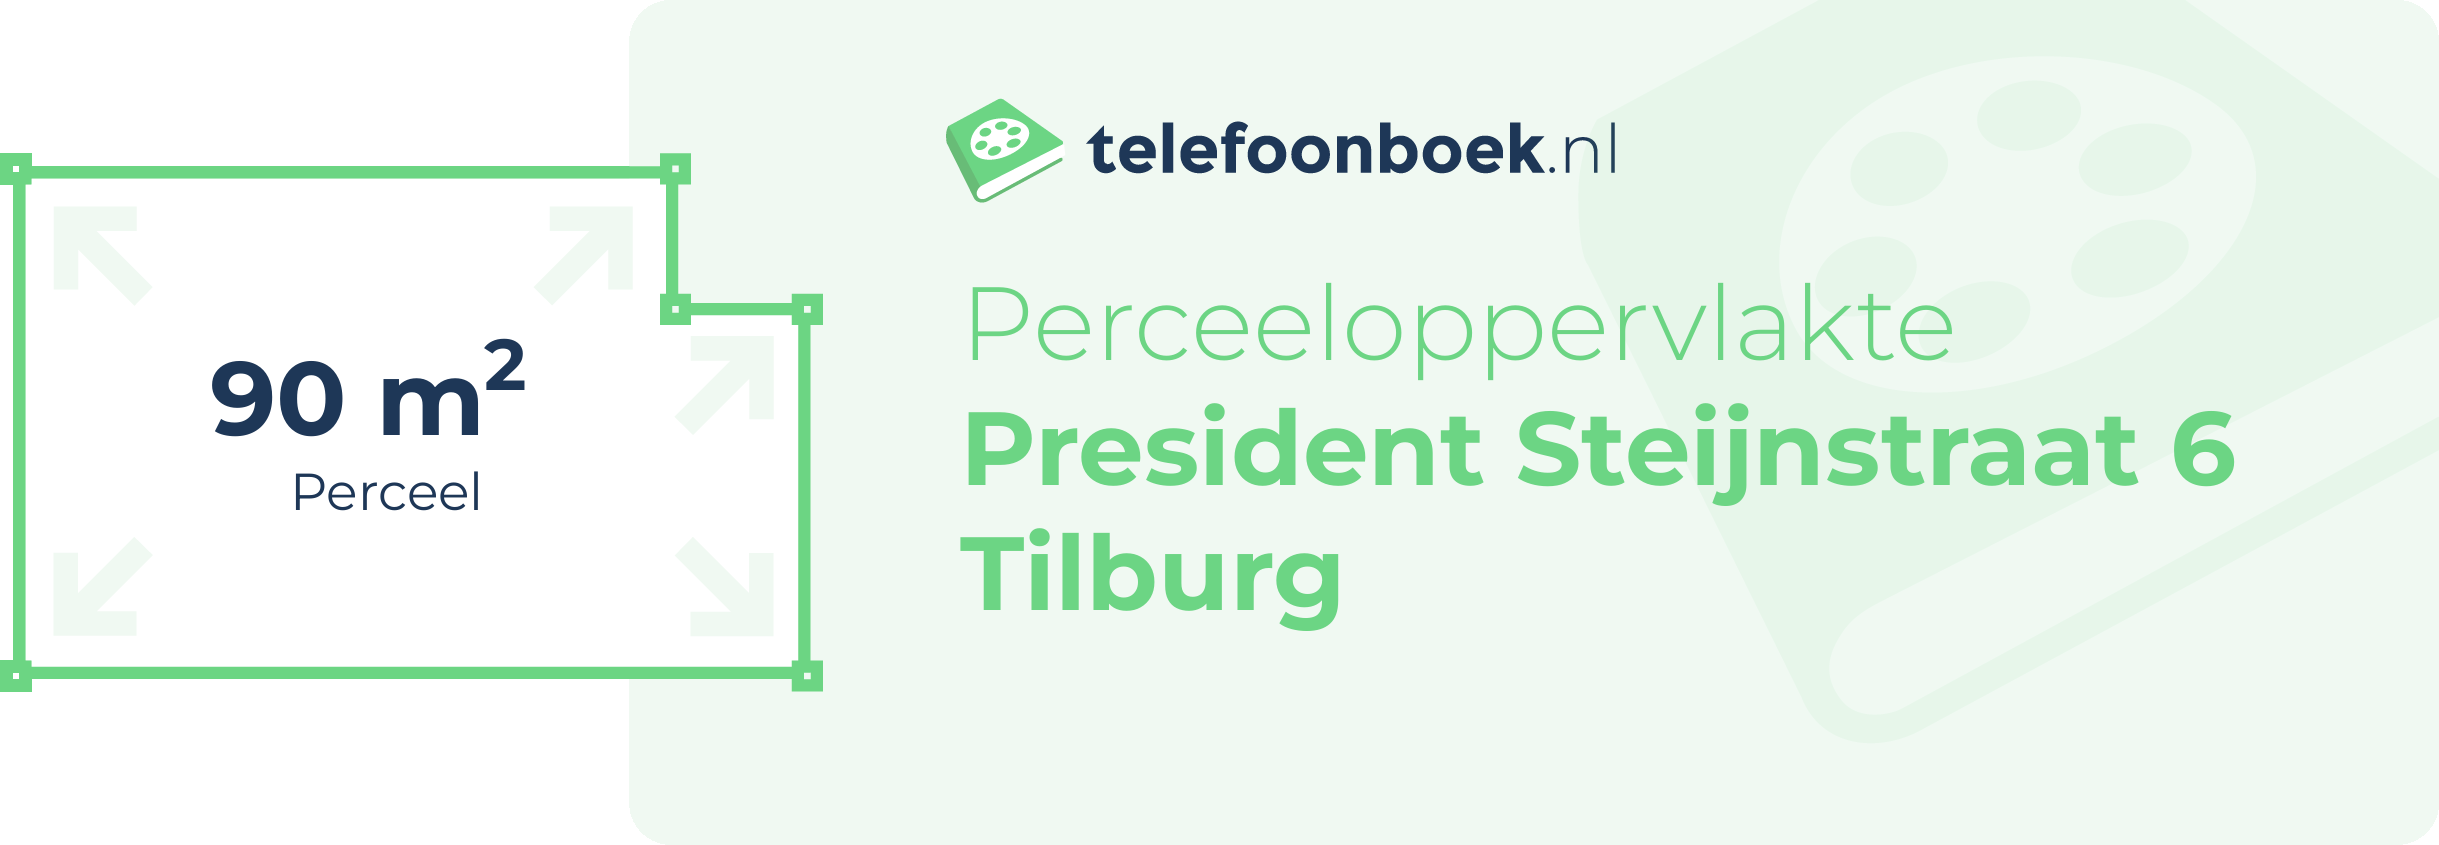 Perceeloppervlakte President Steijnstraat 6 Tilburg